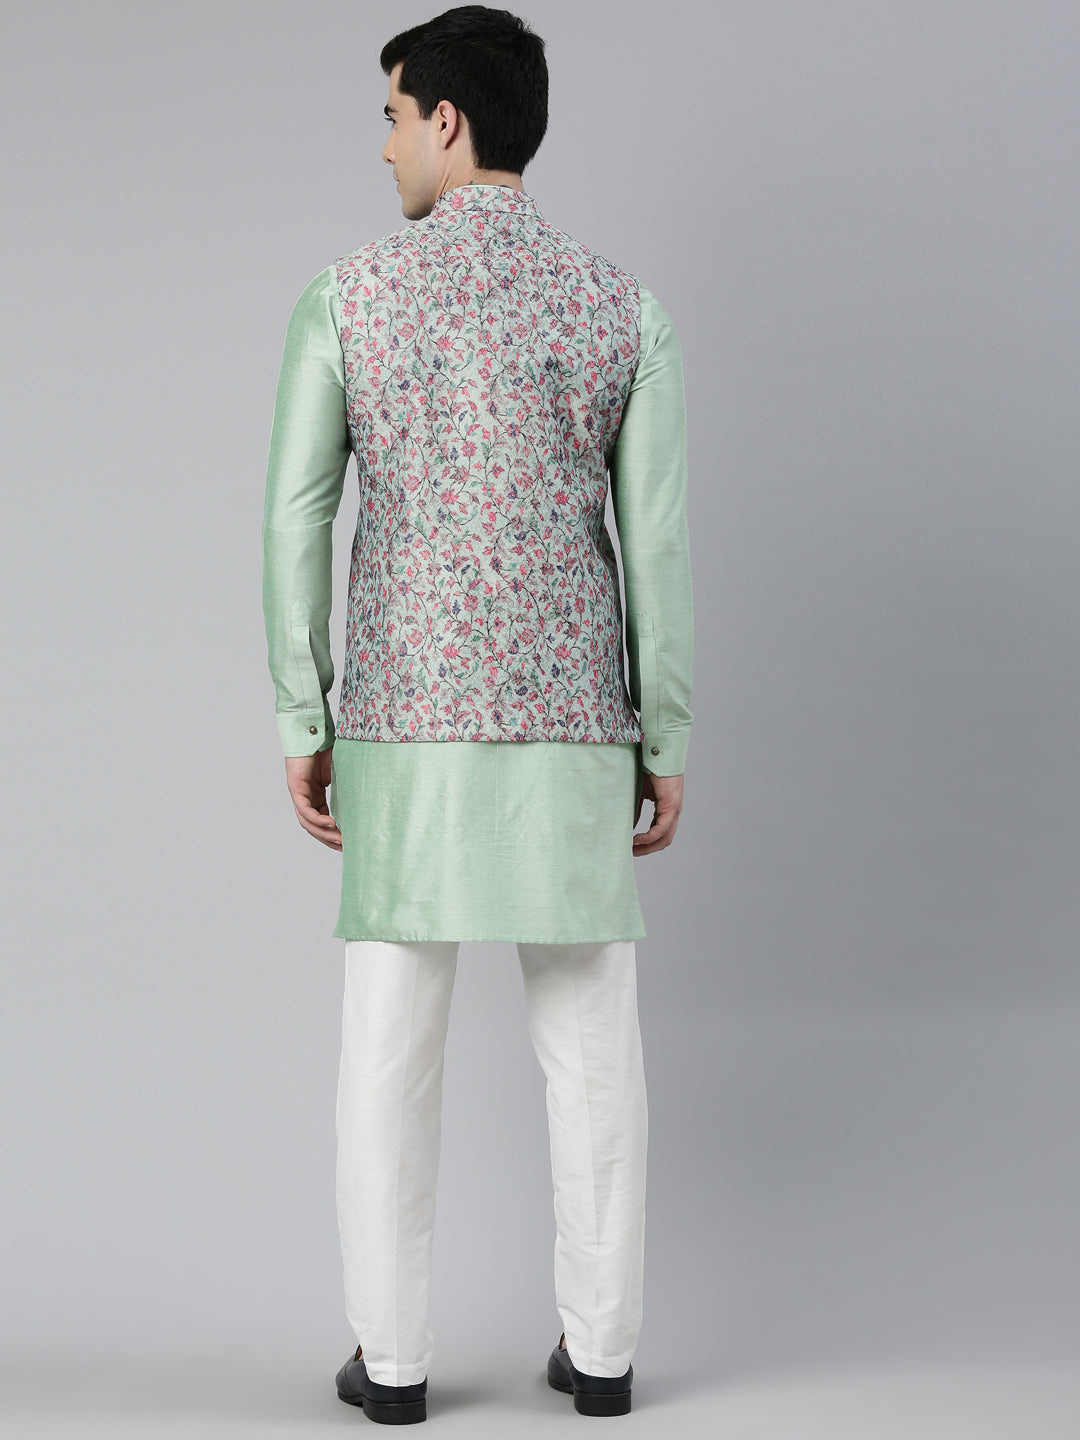 Jade Green Pashmina Print Jacket with Solid Green Short Kurta Set